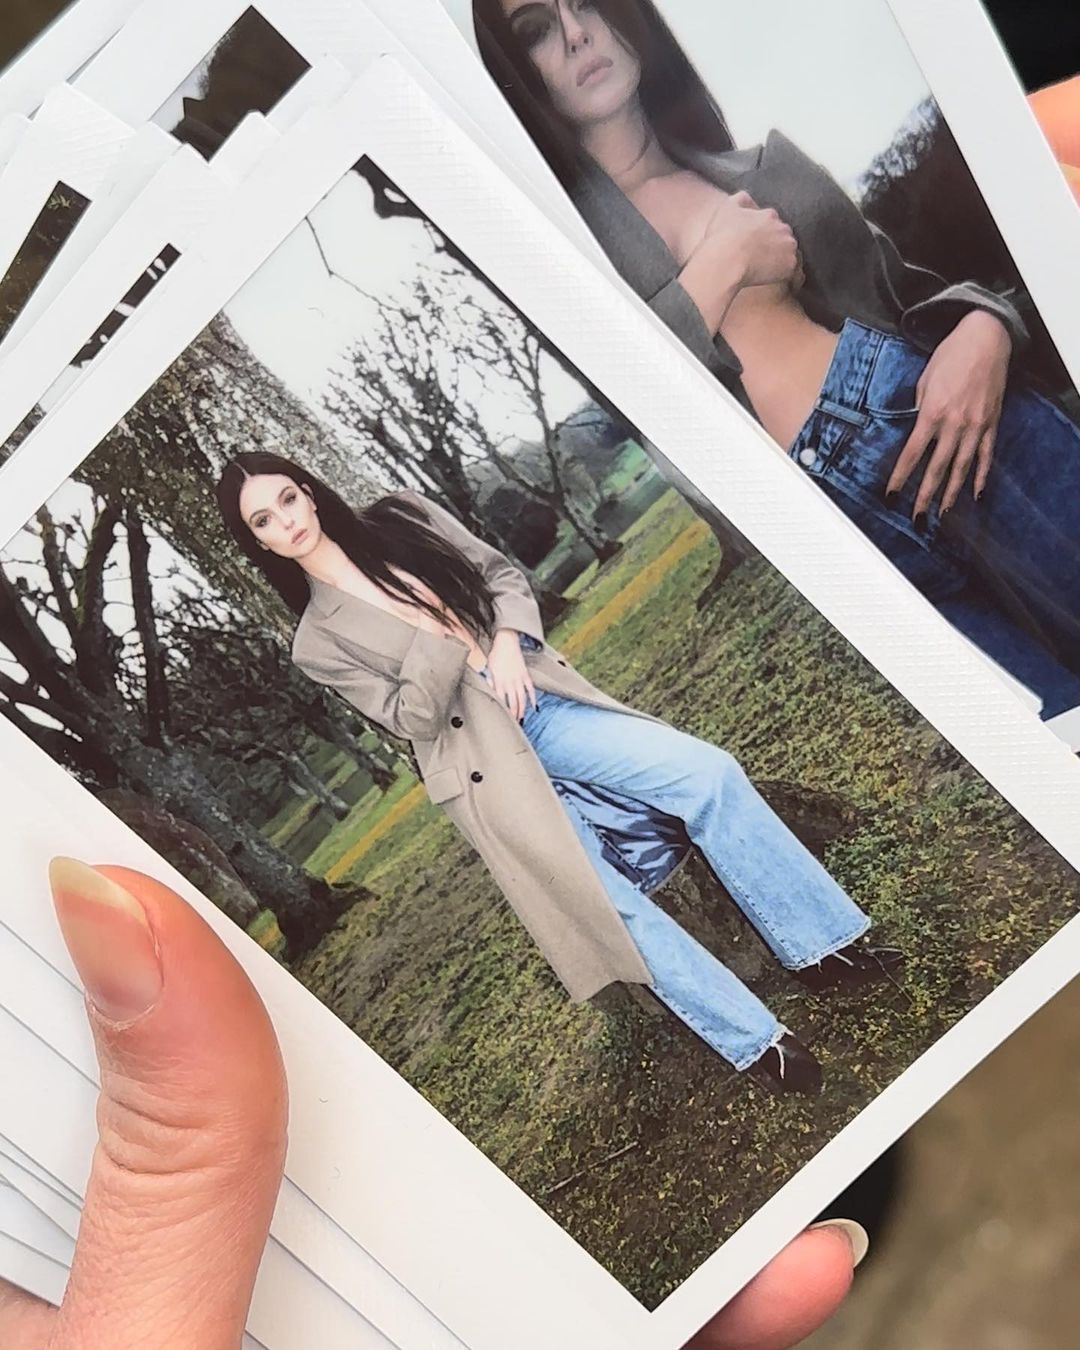 З оголеними грудьми і в трендових джинсах: дочка Моніки Беллуччі показала відверті фото 